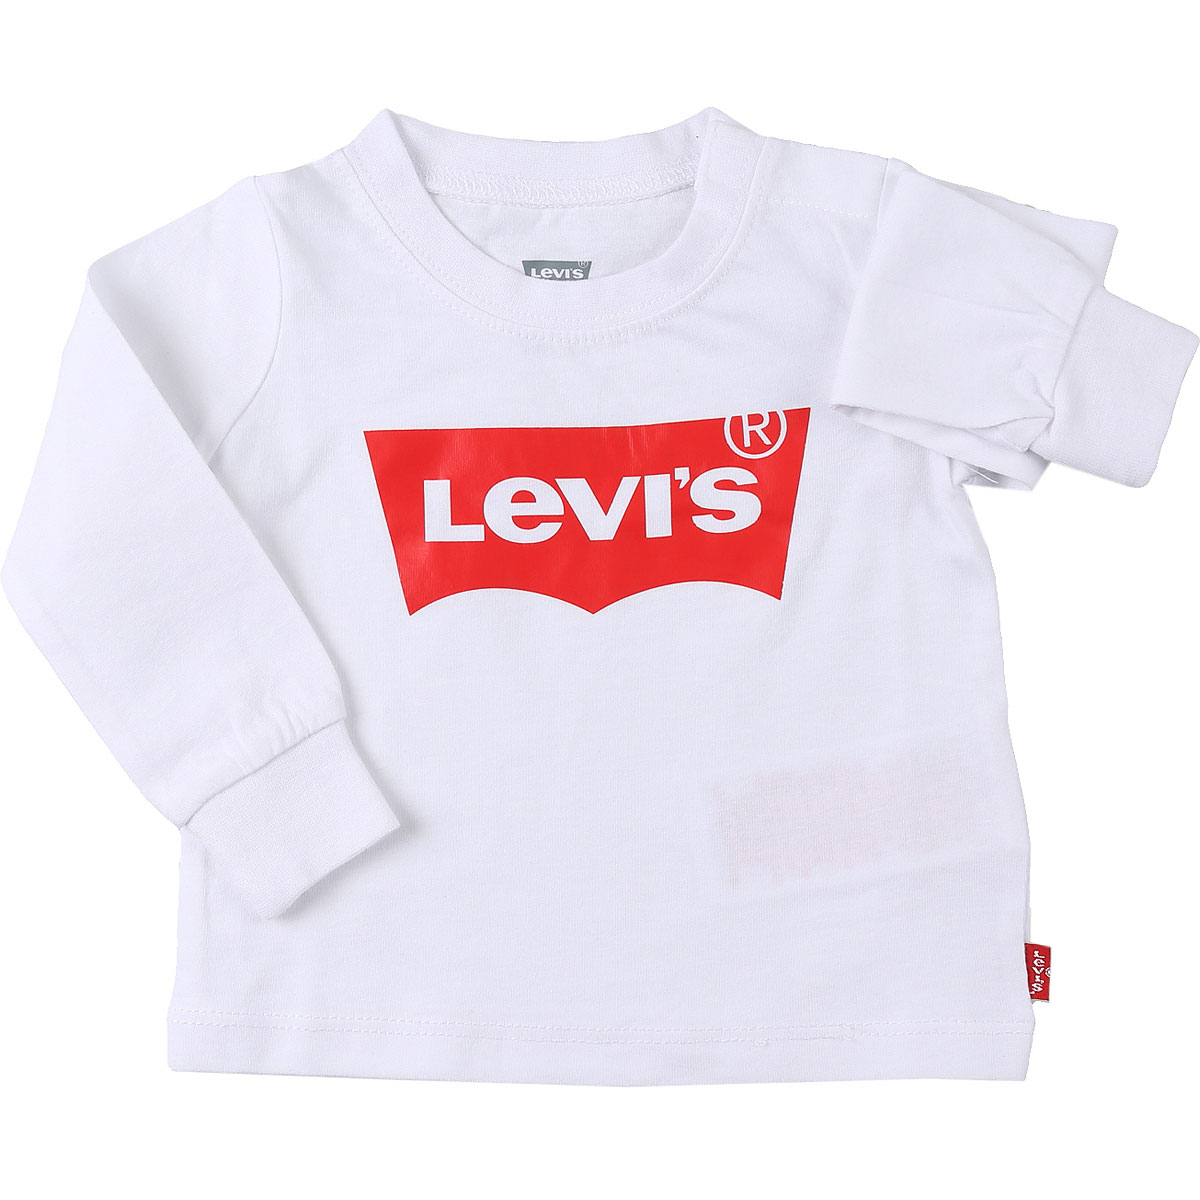 Levis Baby T-Shirt für Jungen Günstig im Sale, Weiss, Baumwolle, 2017, 12 M 18M 2Y 3Y 6M 9M